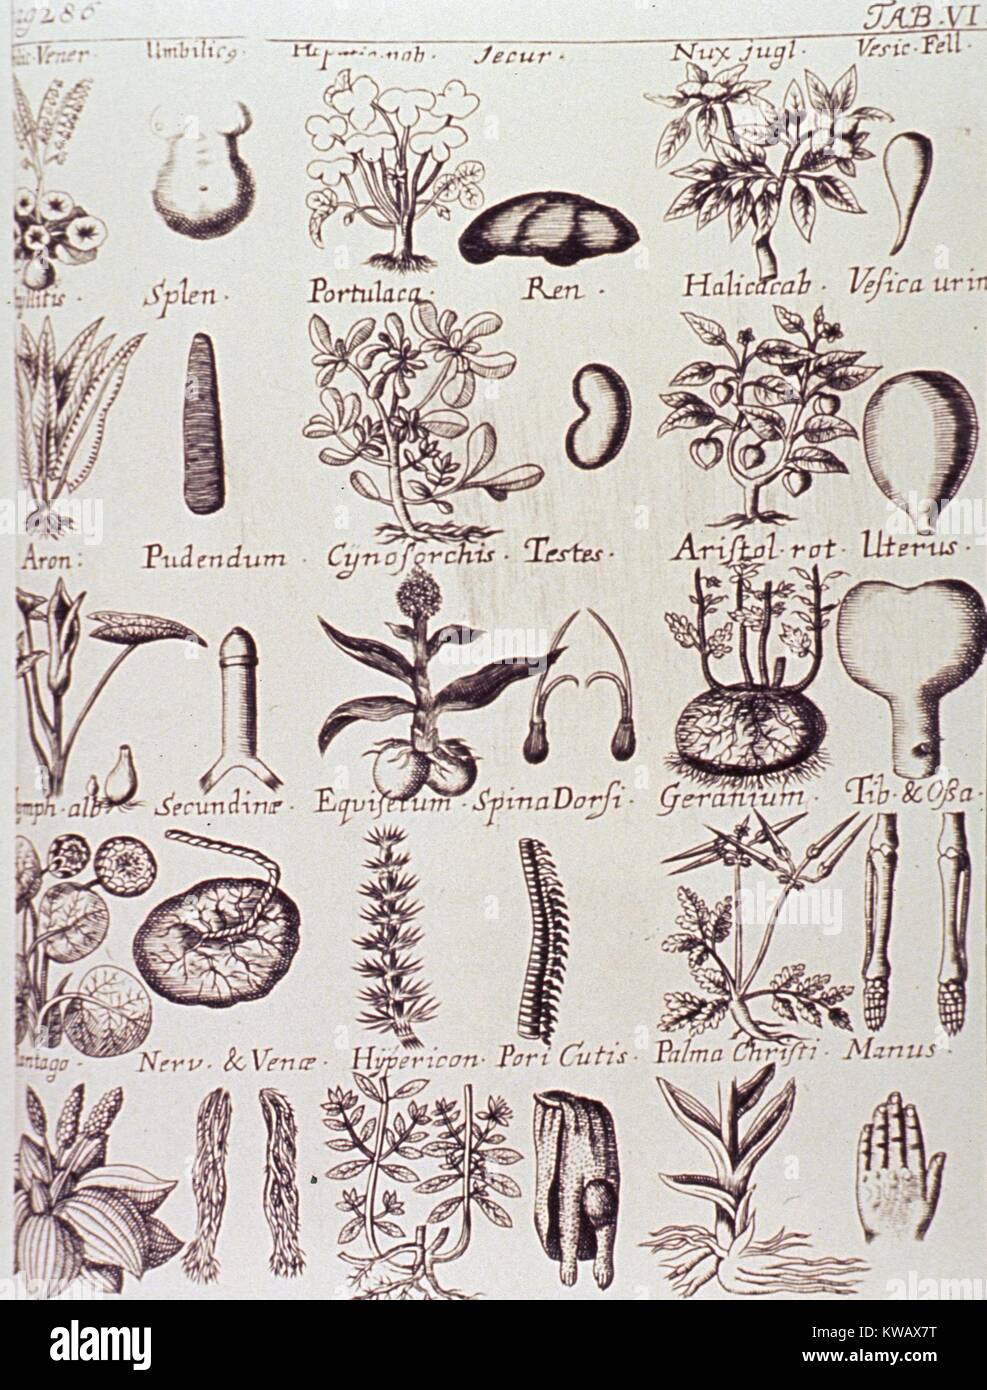 Abbildung: Heilpflanzen und ihren Wert zu den verschiedenen Teilen des menschlichen Körpers, 1713. Mit freundlicher Genehmigung der nationalen Bibliothek für Medizin. Stockfoto